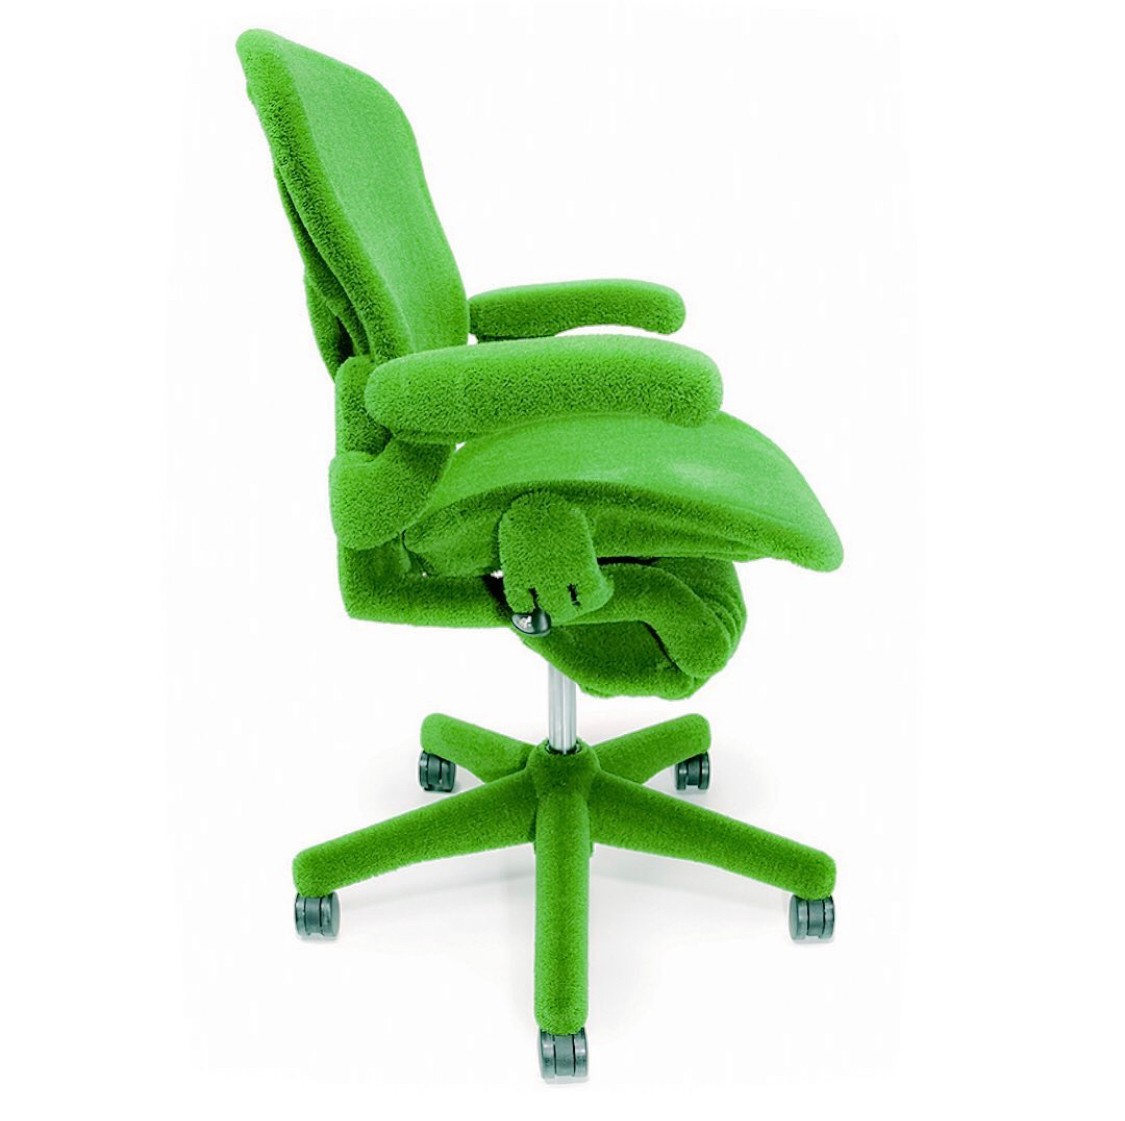 стул у ребенка зелено желтый стул